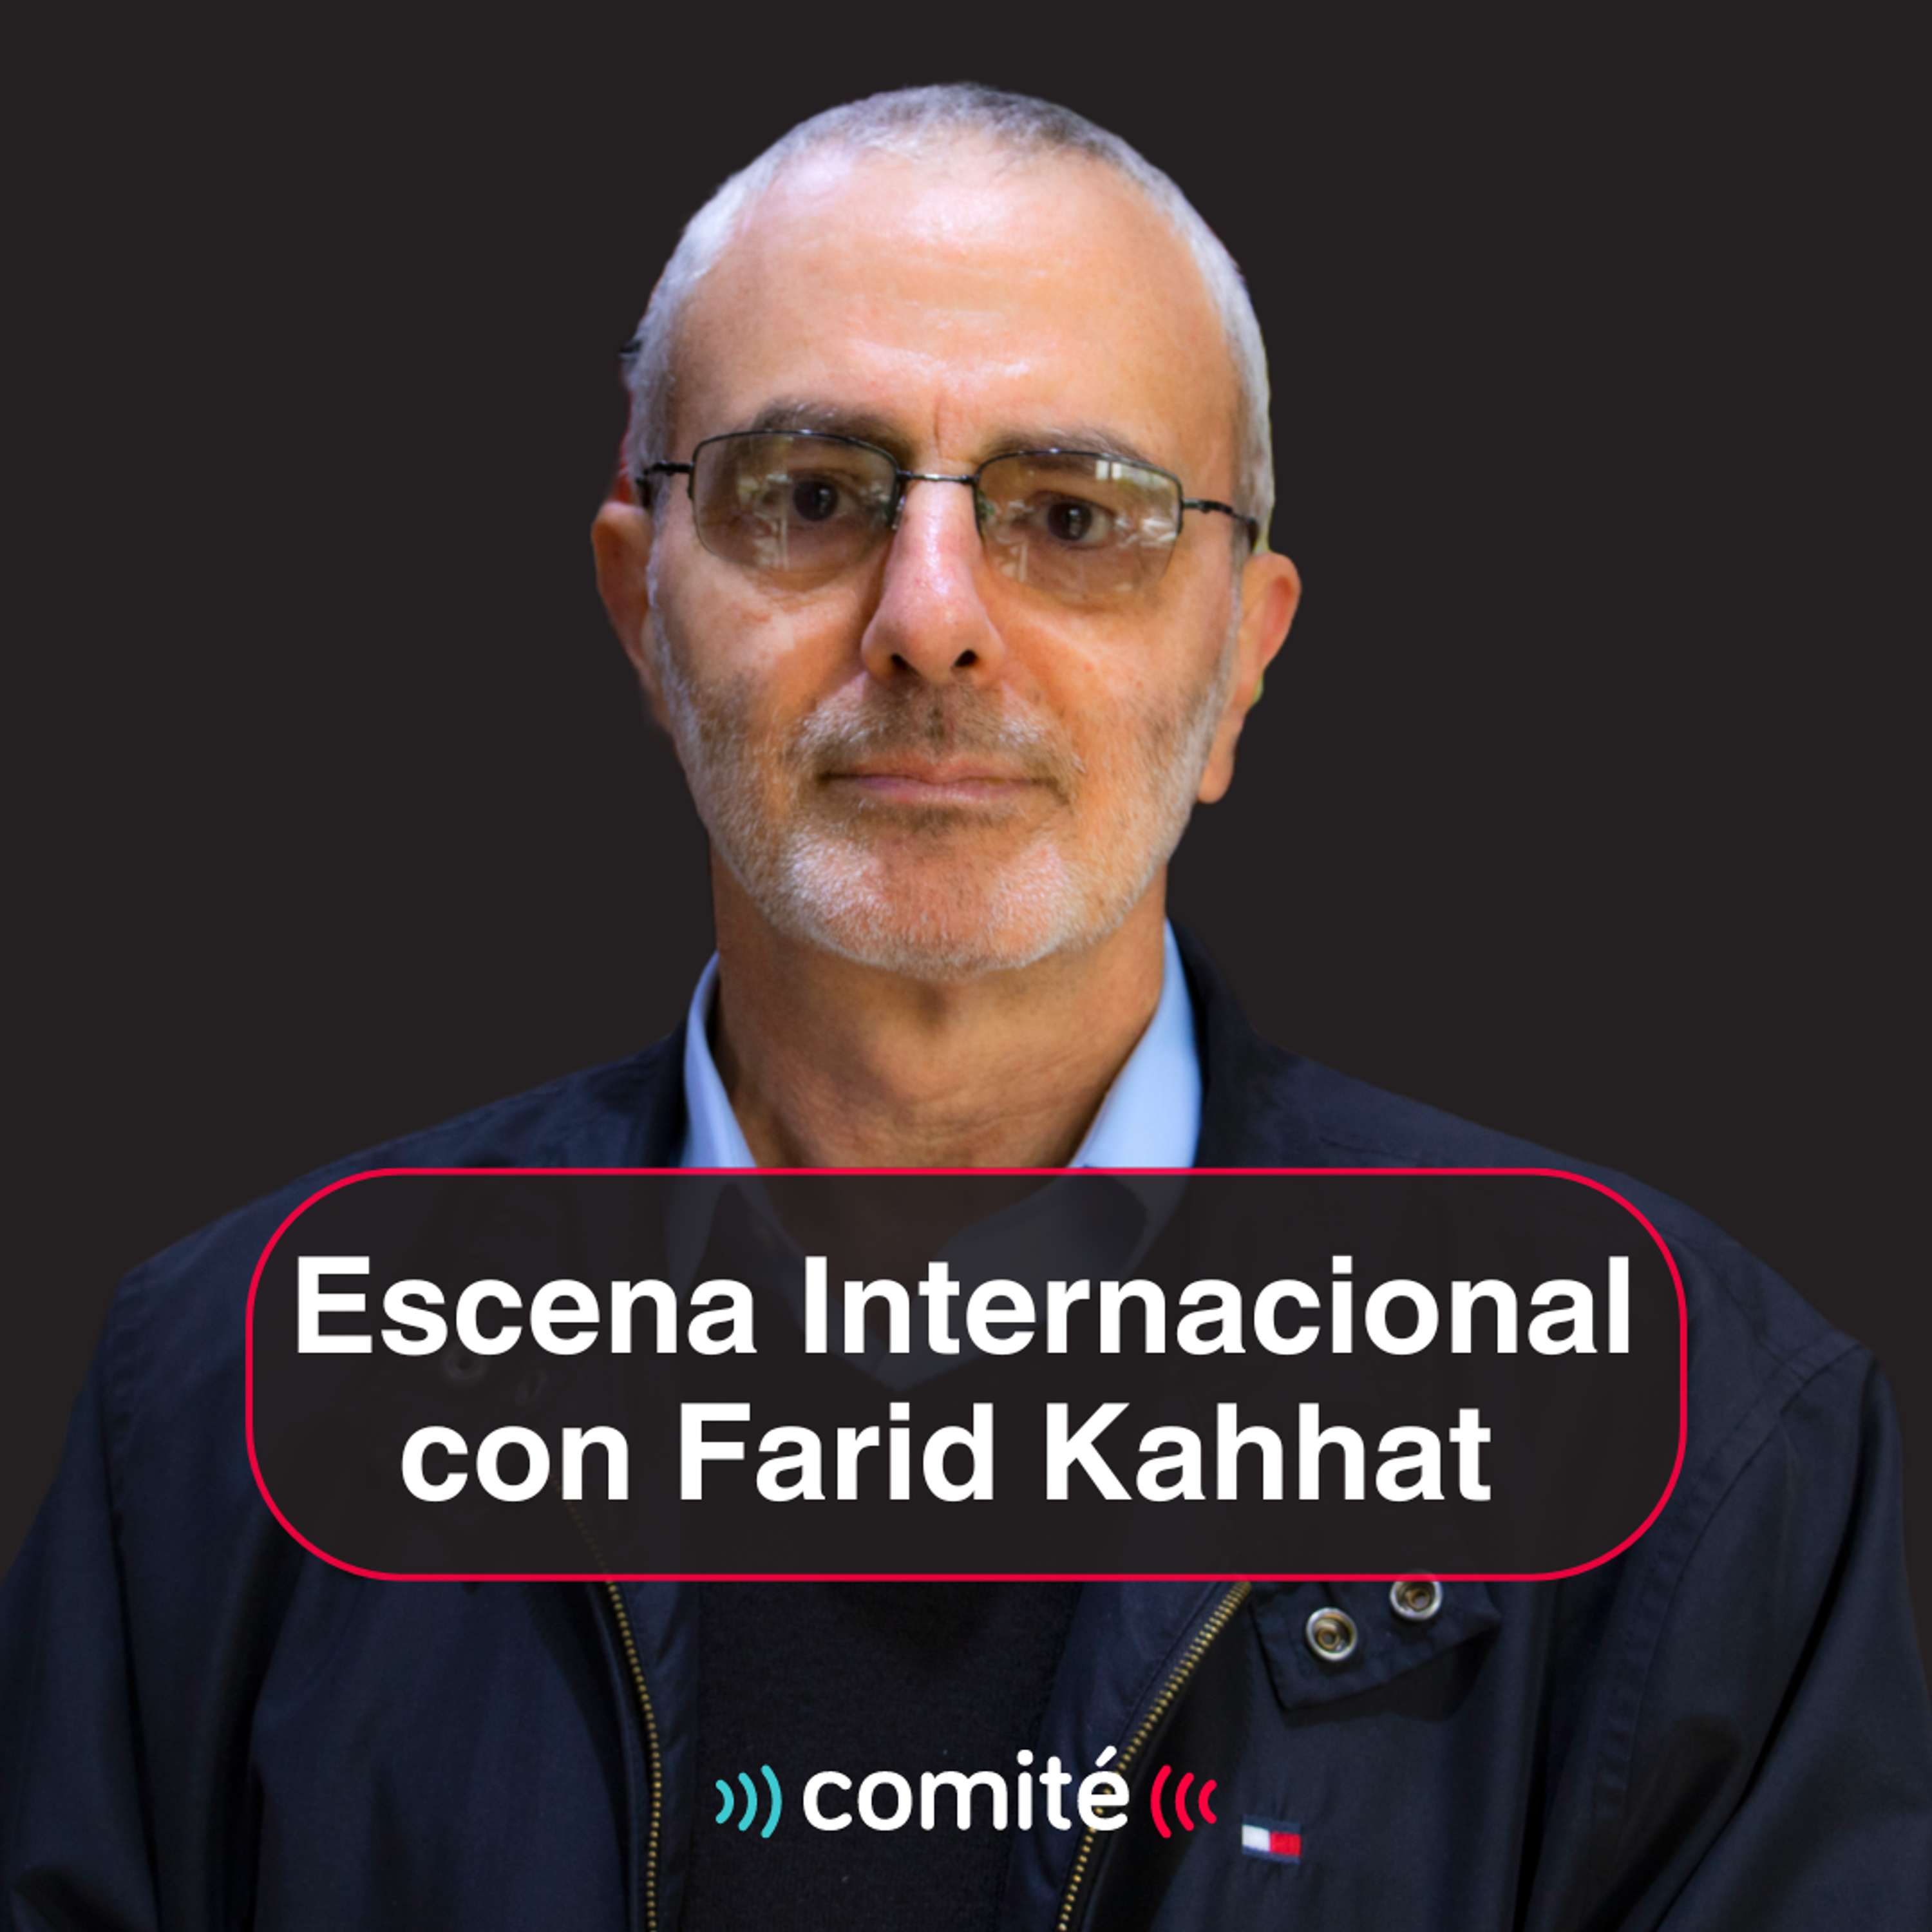 Los laboristas arrasan en UK y las repercusiones del debate presidencial de EEUU | Escena Internacional con Farid Kahhat